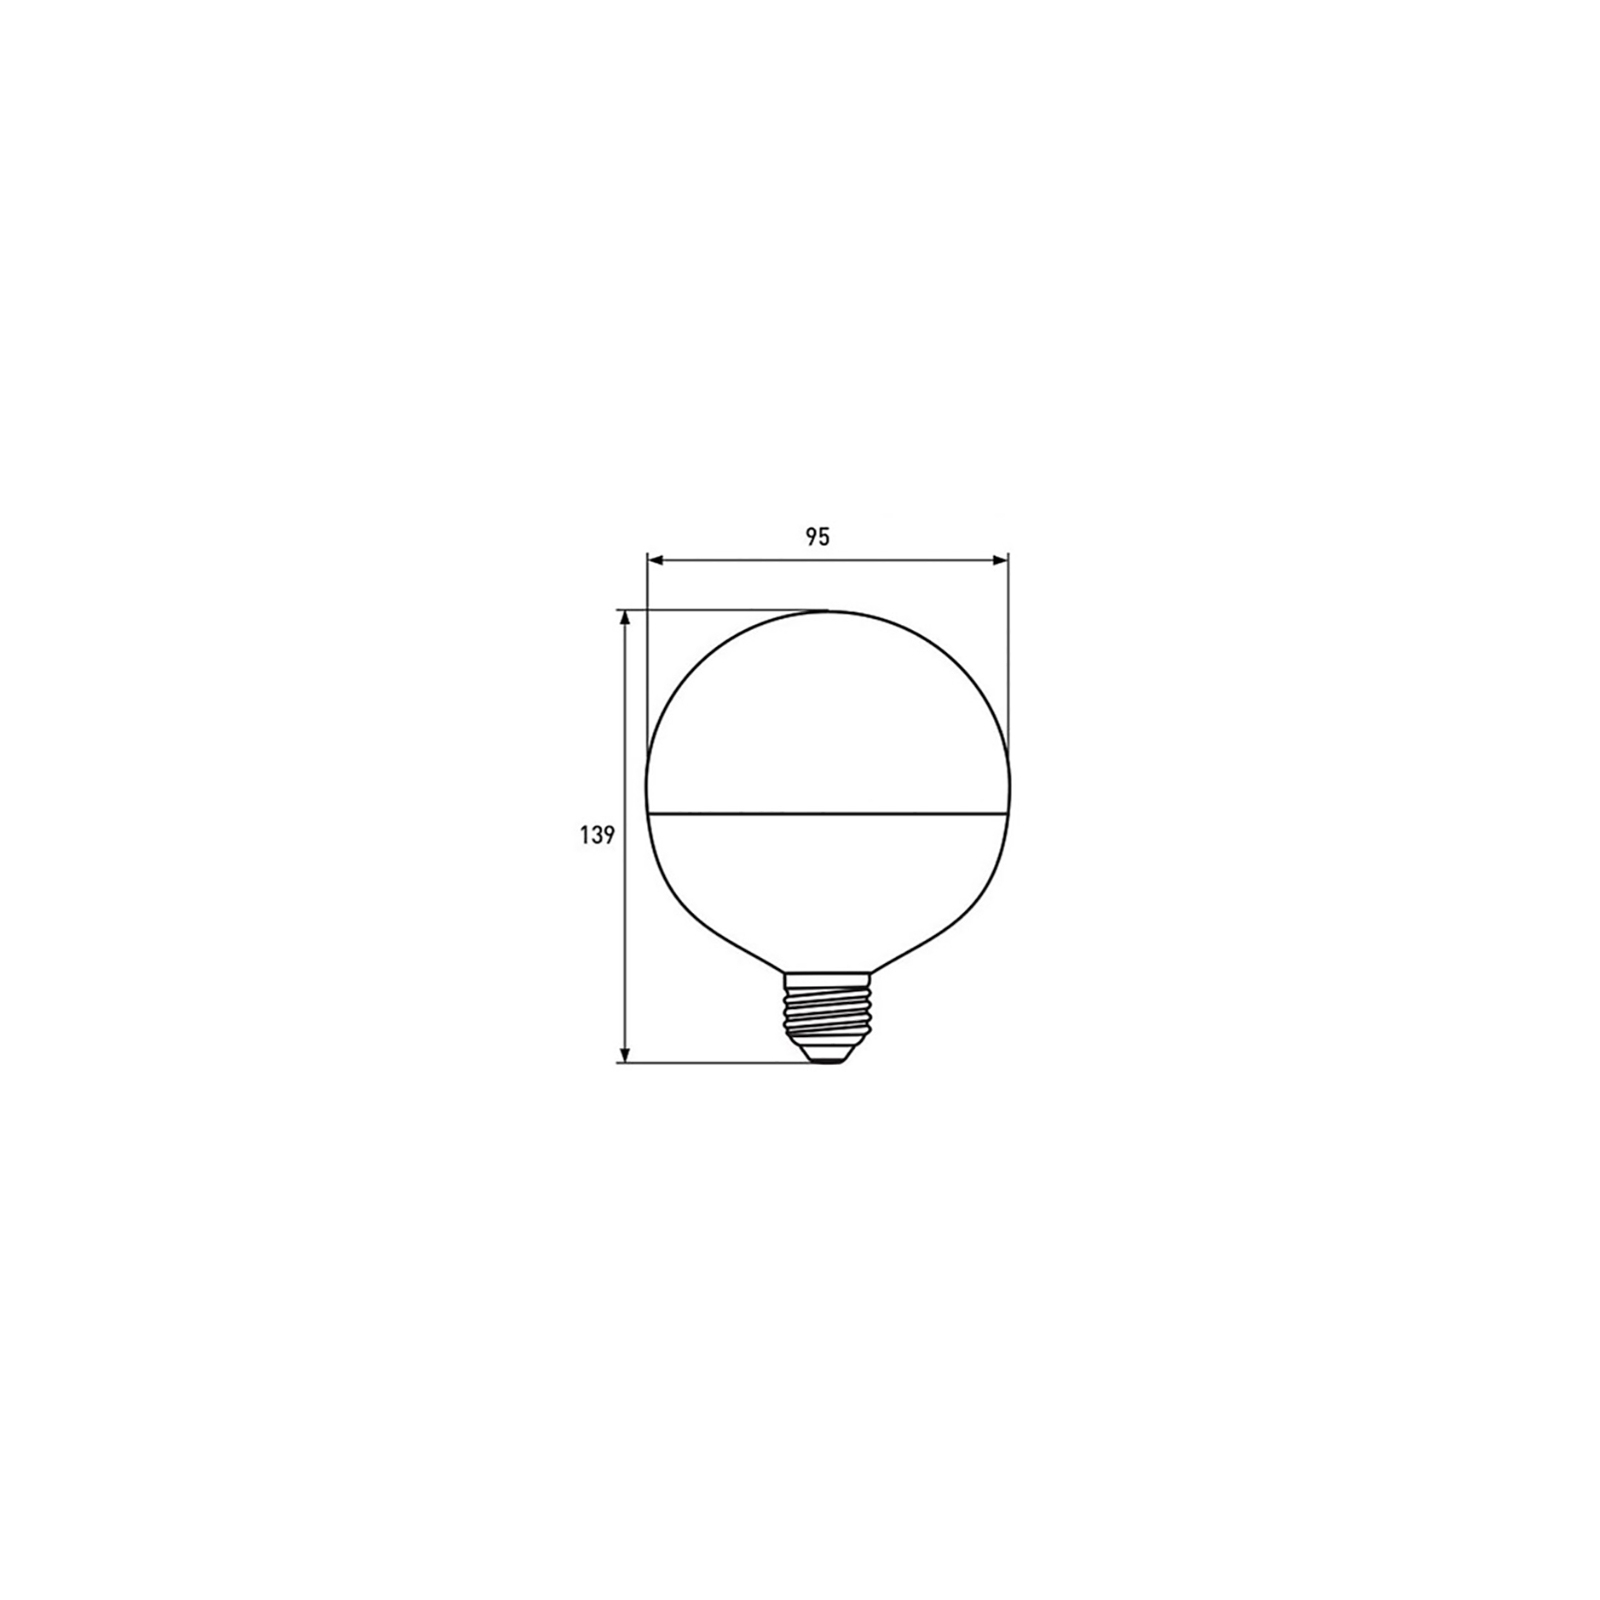 Лампочка Eurolamp LED G95 15W E27 4000K 220V (LED-G95-15274(P)) зображення 3